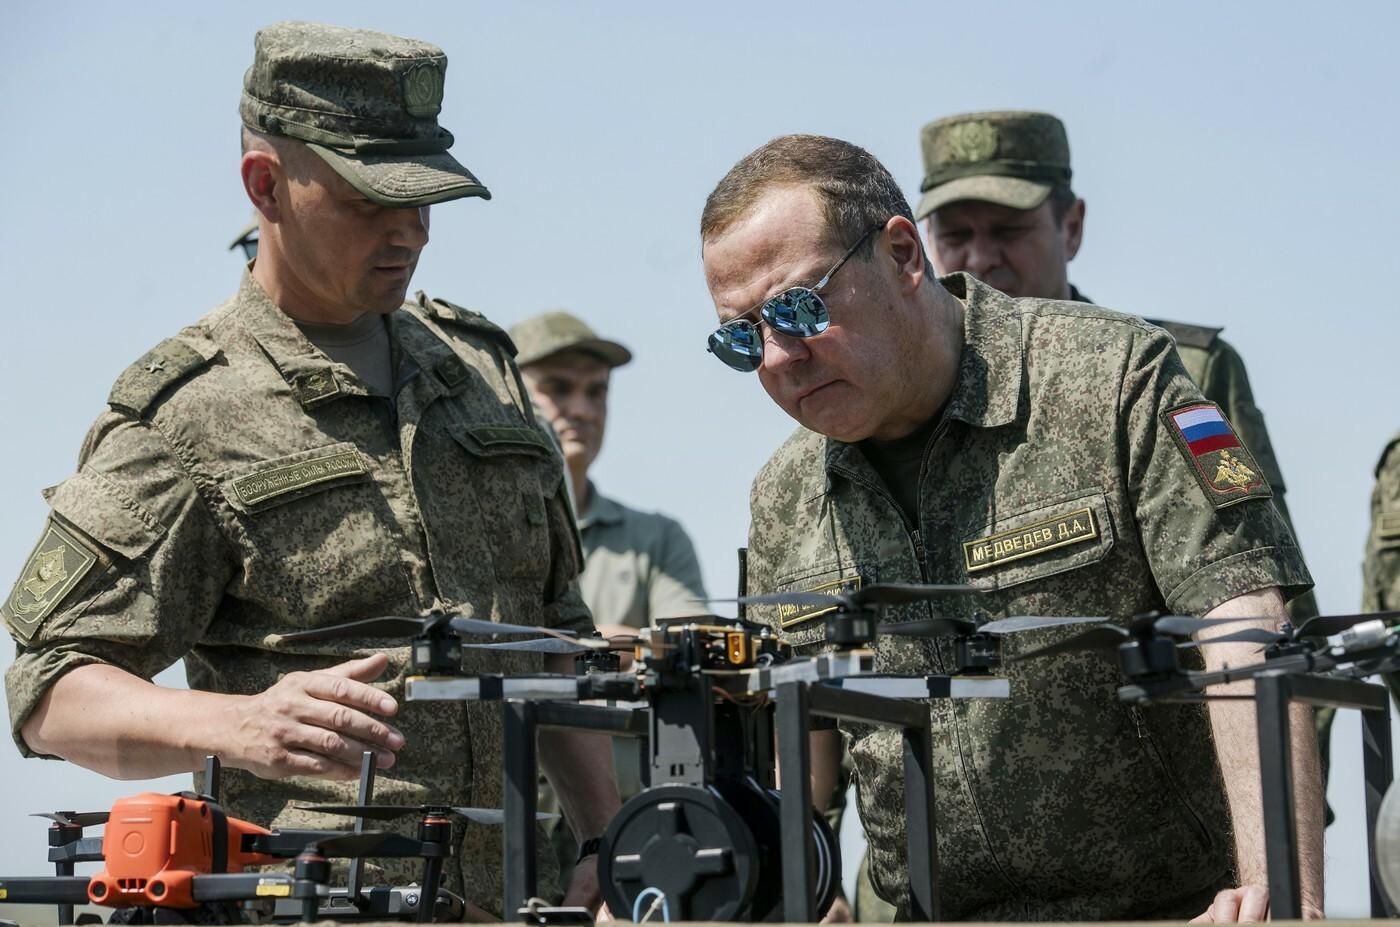 Vojna potrvá desať rokov, potom Ukrajina prestane existovať, vyhlásil Medvedev